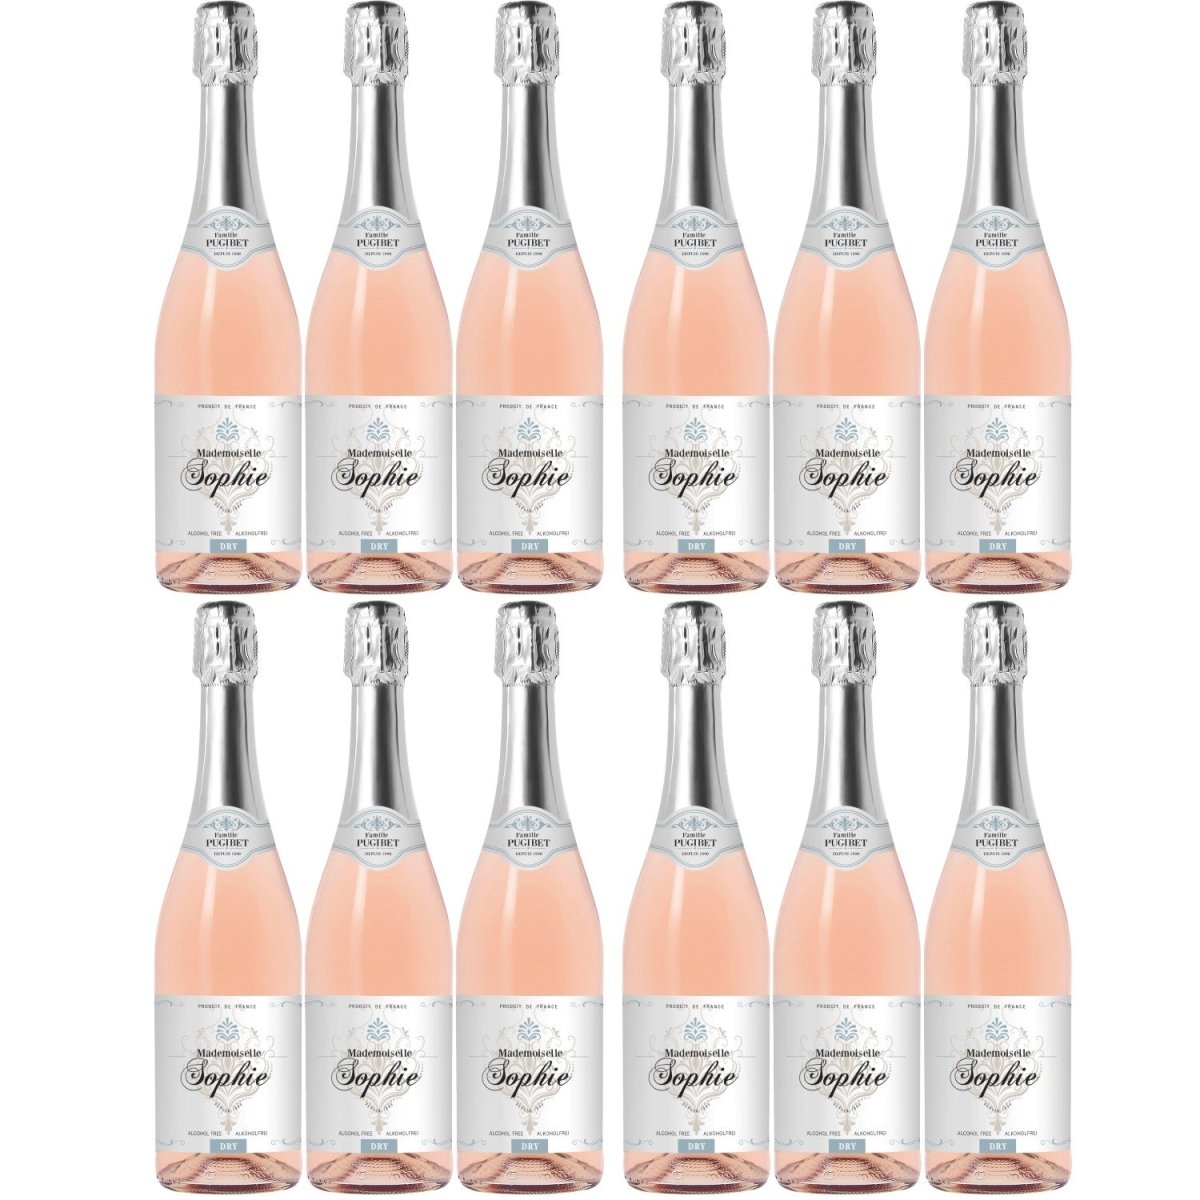 Famille Pugibet Mademoiselle Sophie Schaumwein Roséwein rosé trocken sec alkoholfrei Frankreich (12 x 0,75l) - Versanel -